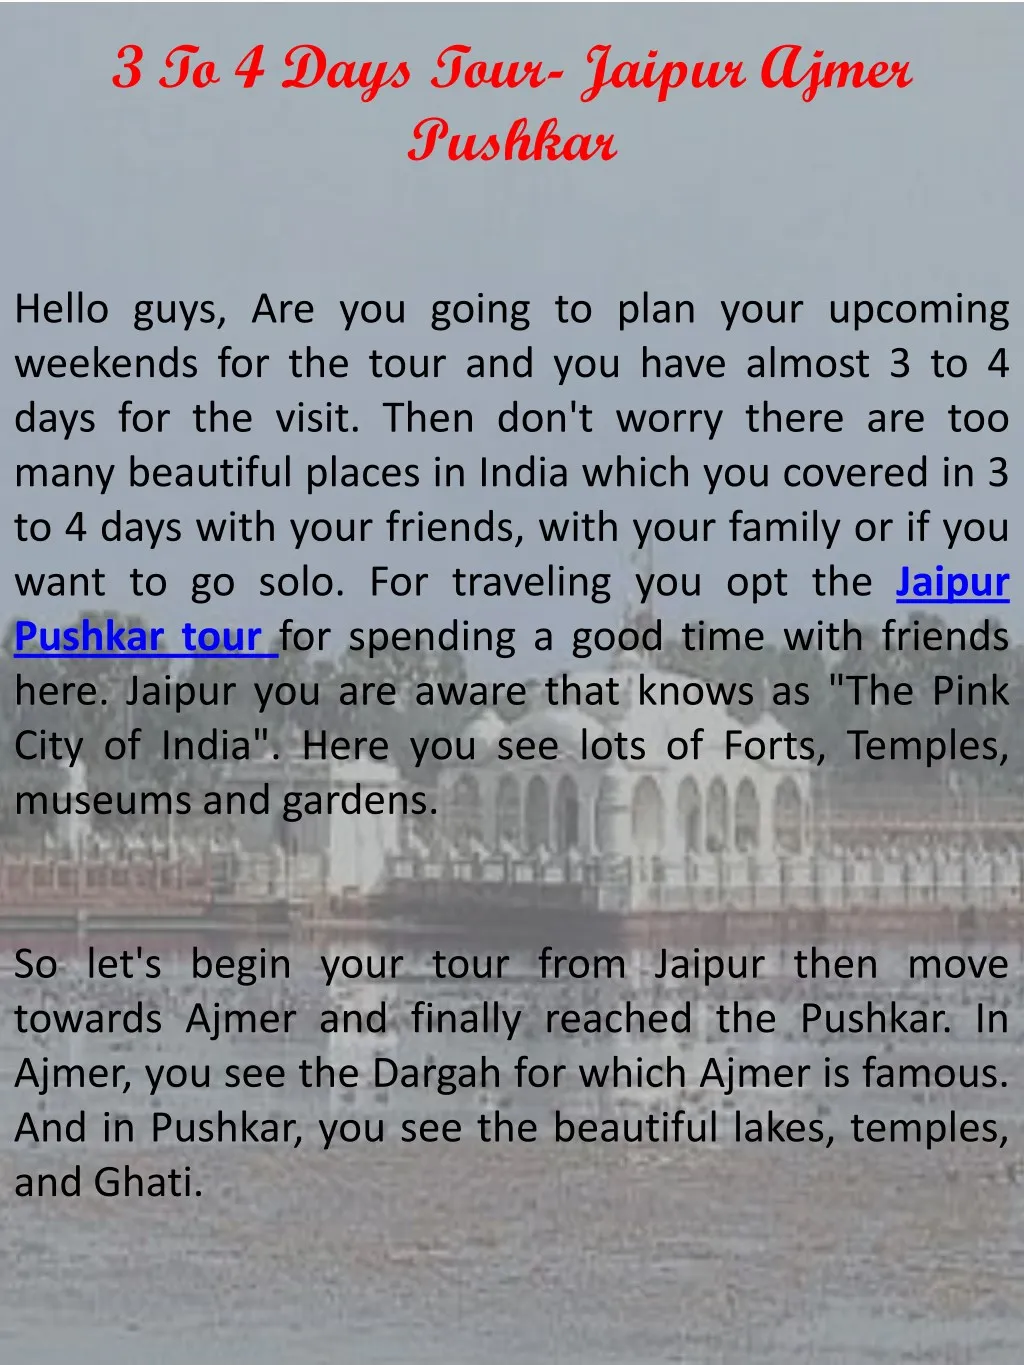 3 to 4 days tour jaipur ajmer pushkar